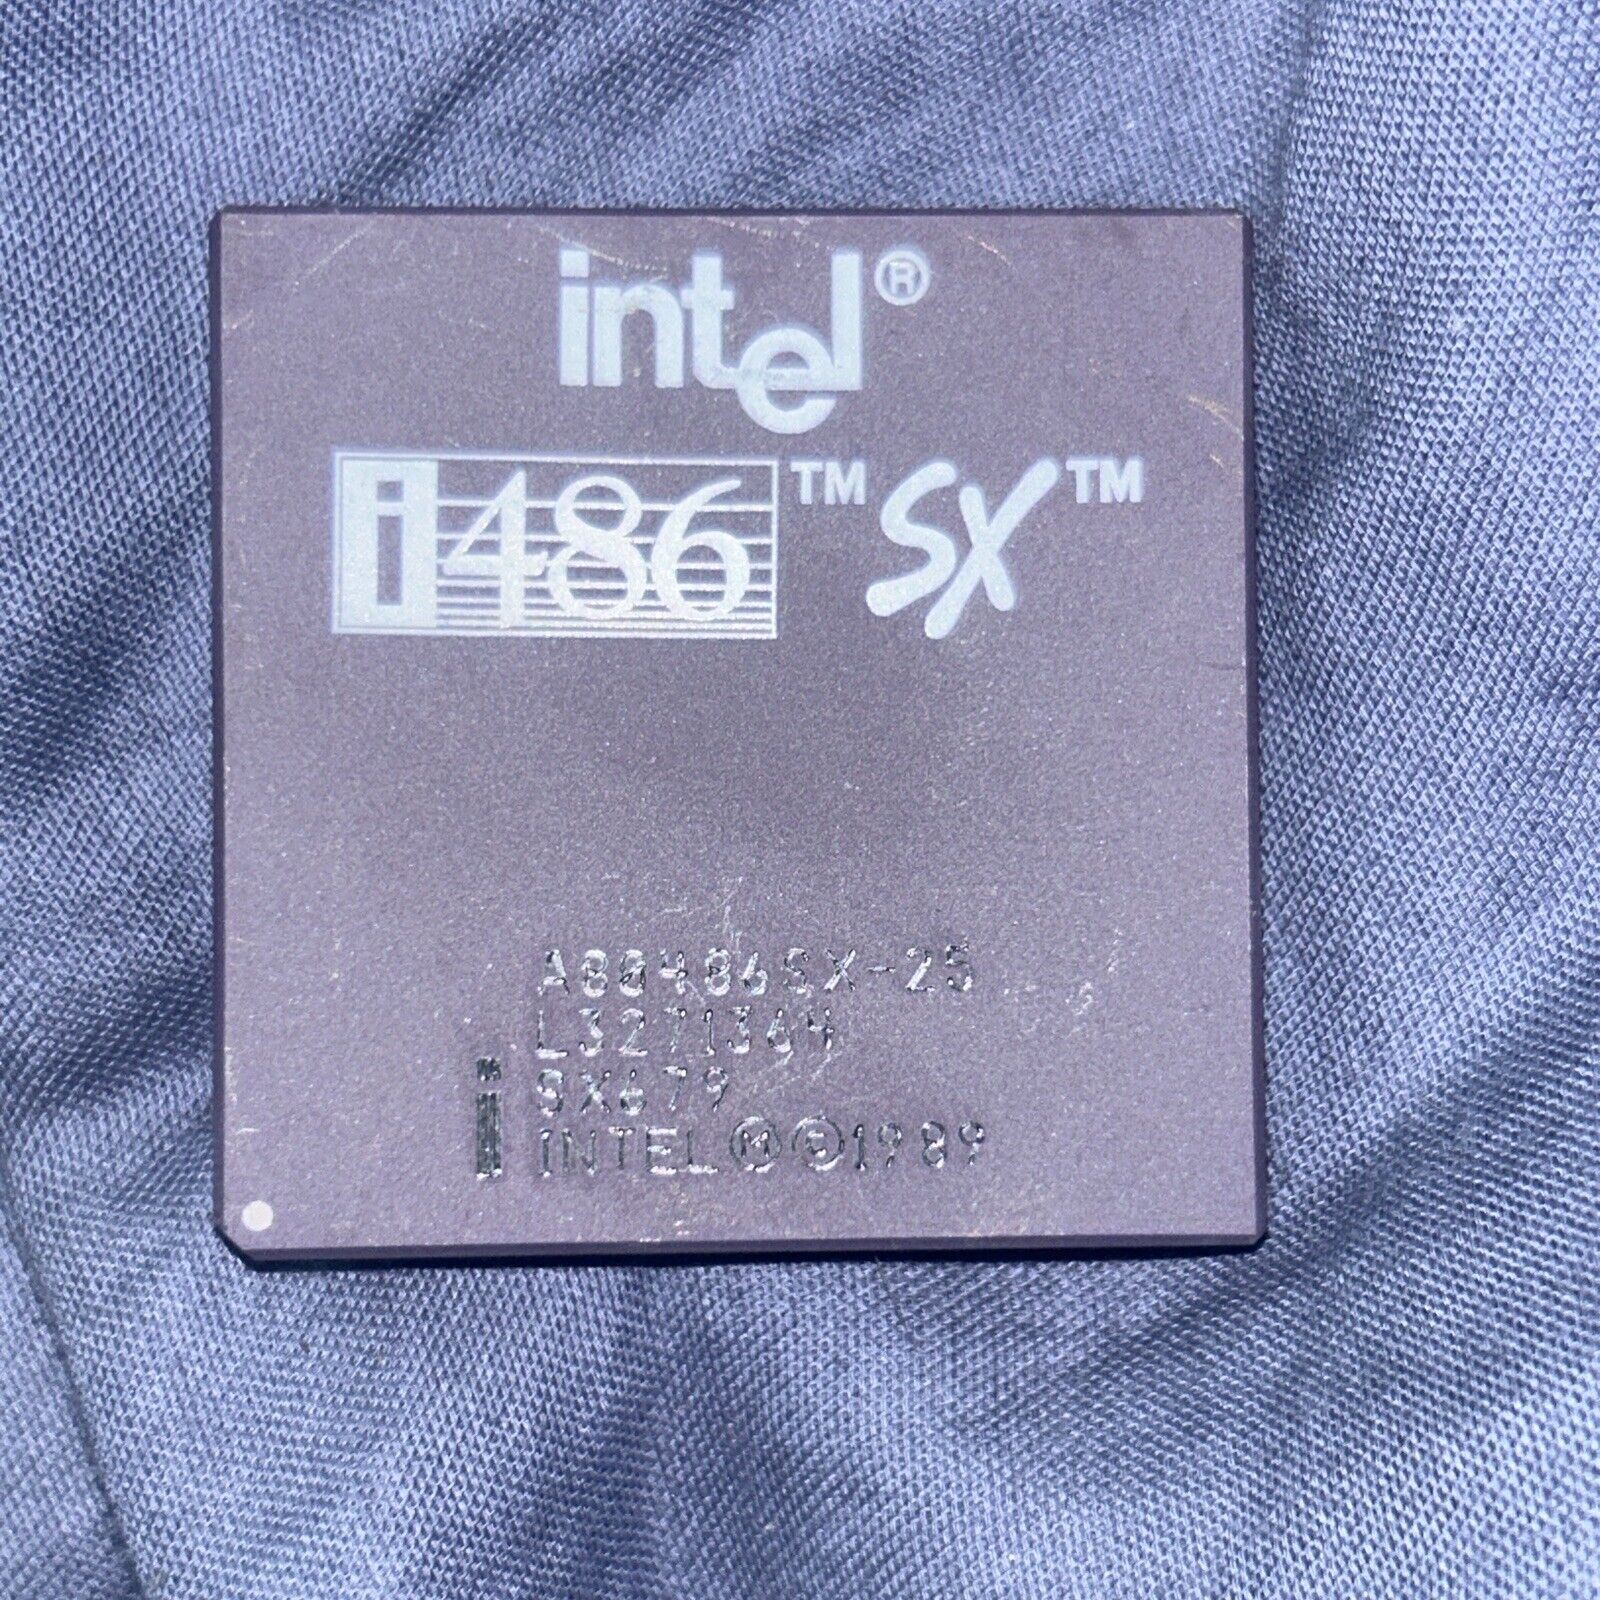 Intel A80486SX-16 CPU SX548 16MHz 5V PGA168 x86 486 Processor Rare Sspec